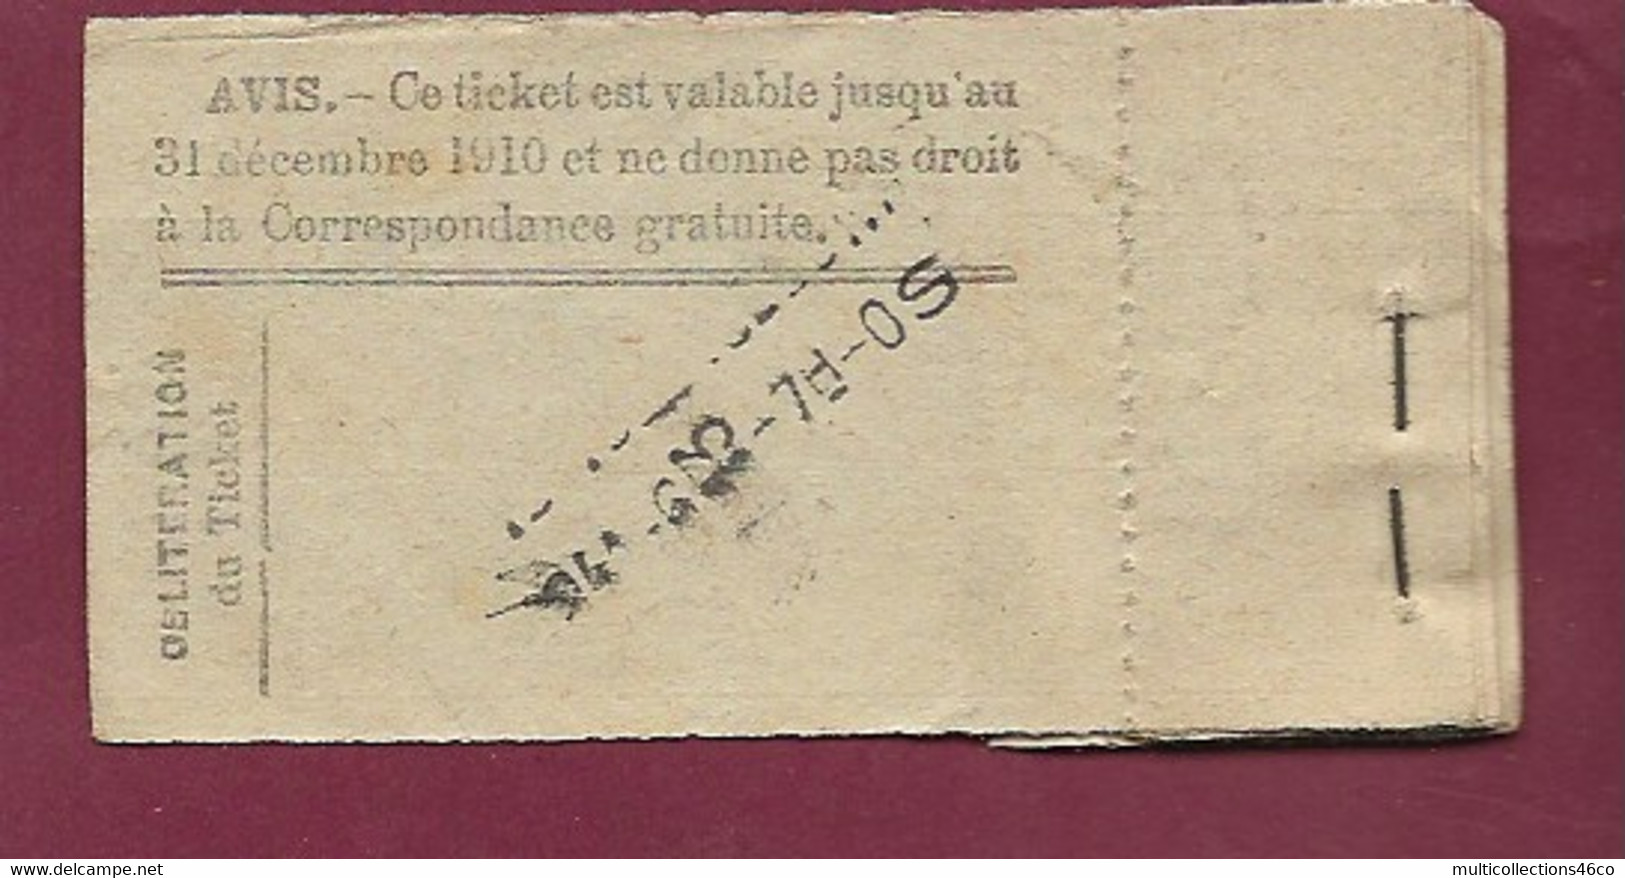 030121D - TICKET CHEMIN DE FER TRAM - Cie OTL Ticket Actionnaire Année 1910 10 Cent. 050760 Avec Souche - Europe